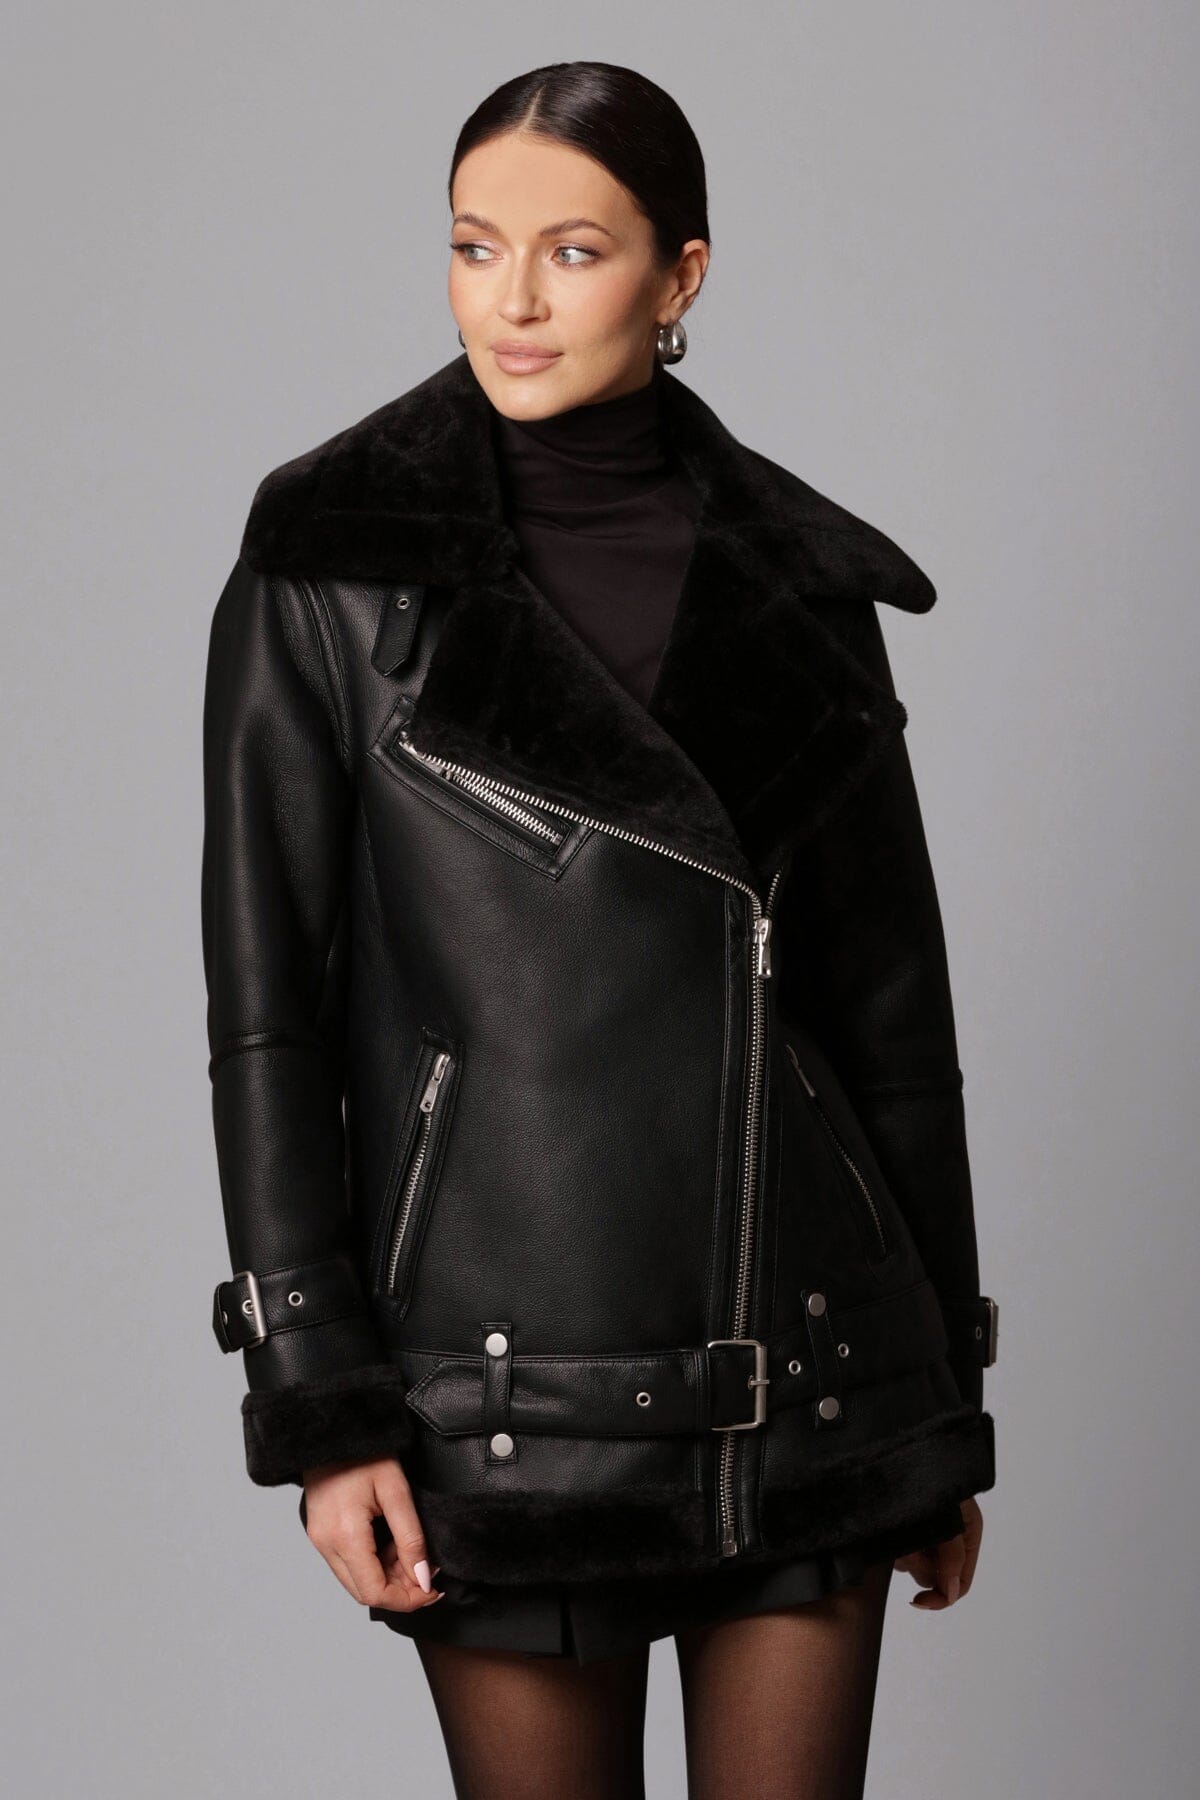 black faux shearling boyfriend biker jacket coat - women's figure flattering edgy night out coats jackets outerwear